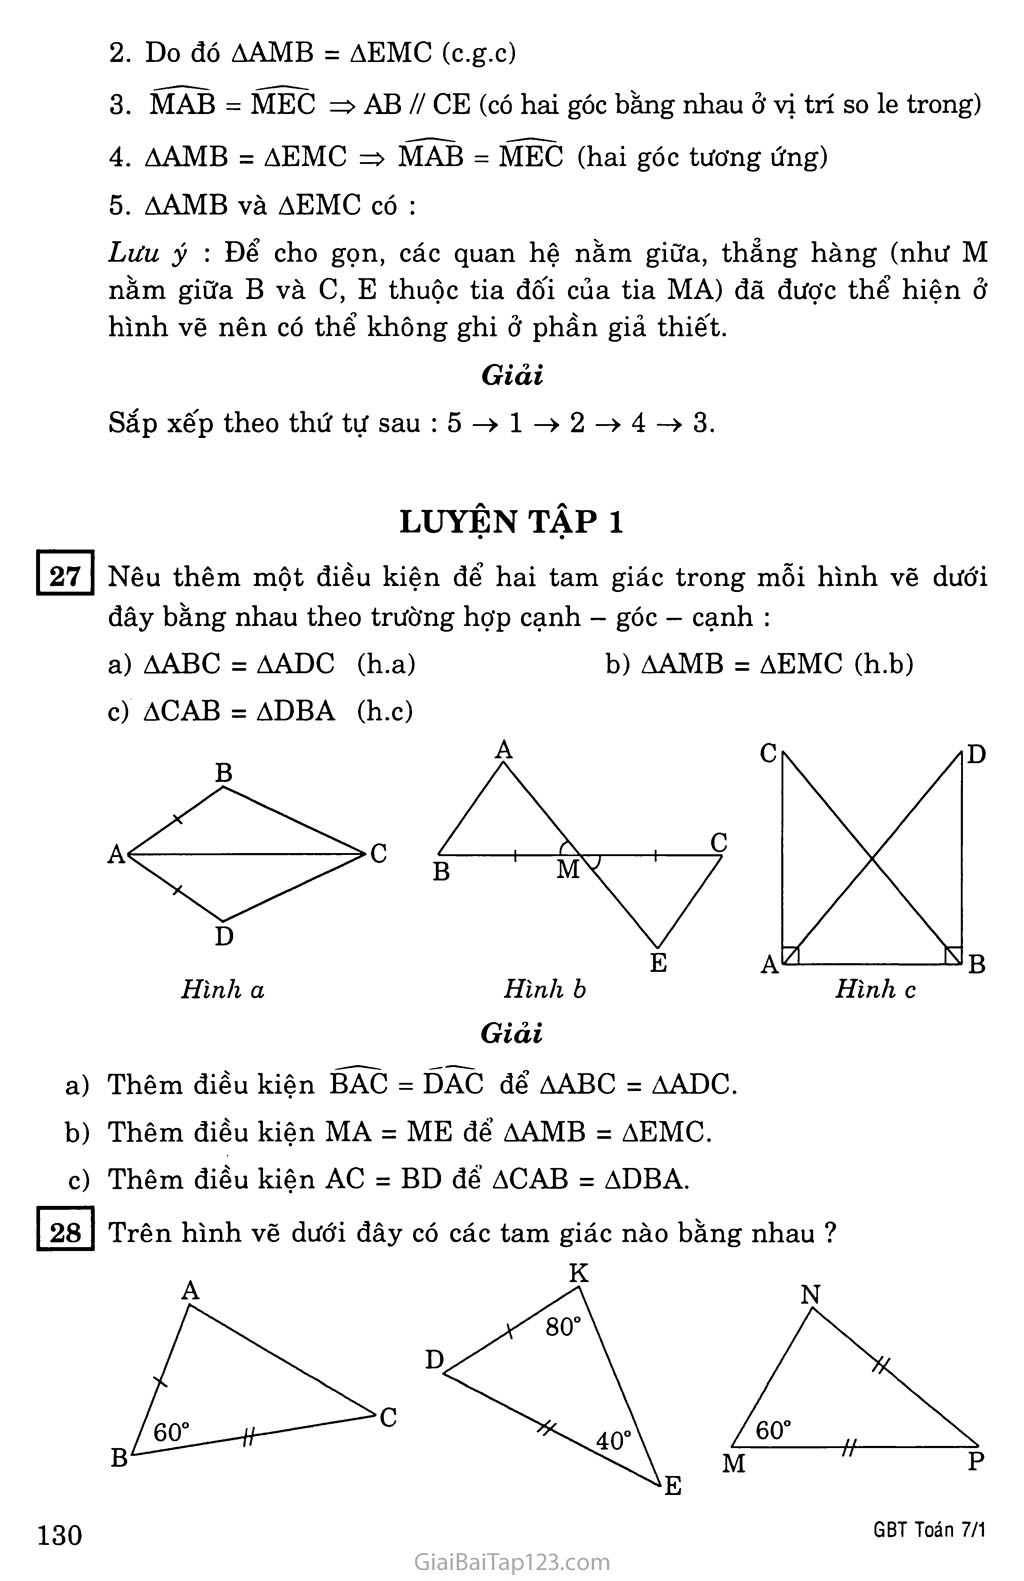 §4. Trường hợp bằng nhau thứ hai của tam giác: cạnh - góc - cạnh (c.g.c) trang 3